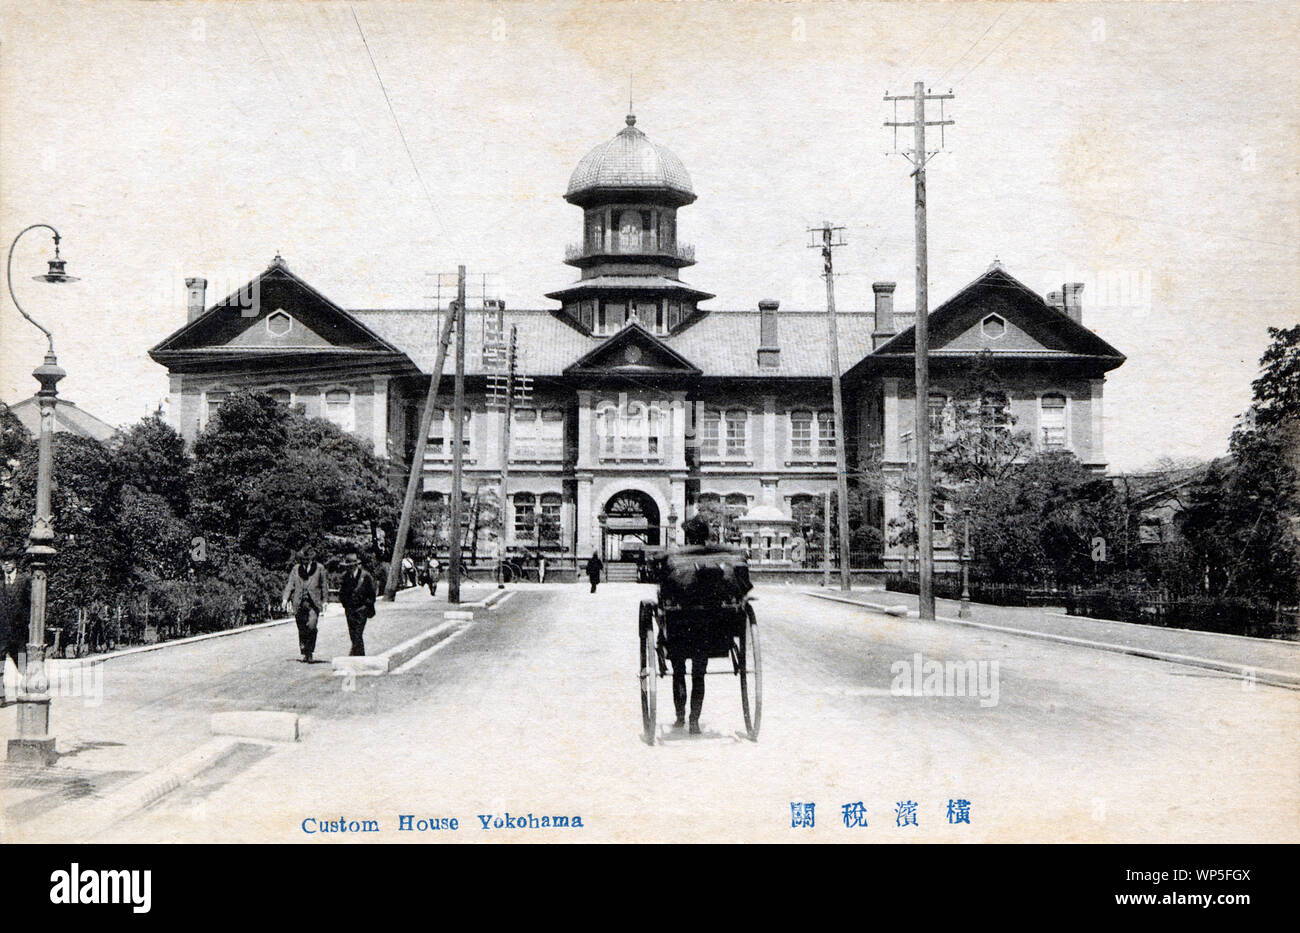 [1910s Japan - Yokohama Customs House] - Die Yokohama Customs House in Yokohama, Kanagawa Präfektur. Das Gebäude wurde von dem amerikanischen Architekten Richard S. Bridgens, die im Jahre 1864 (Genji 1) nach Japan aus San Francisco gekommen war. Es war von 1873 bis Anfang der 1910er Jahre verwendet. 20. jahrhundert alte Ansichtskarte. Stockfoto